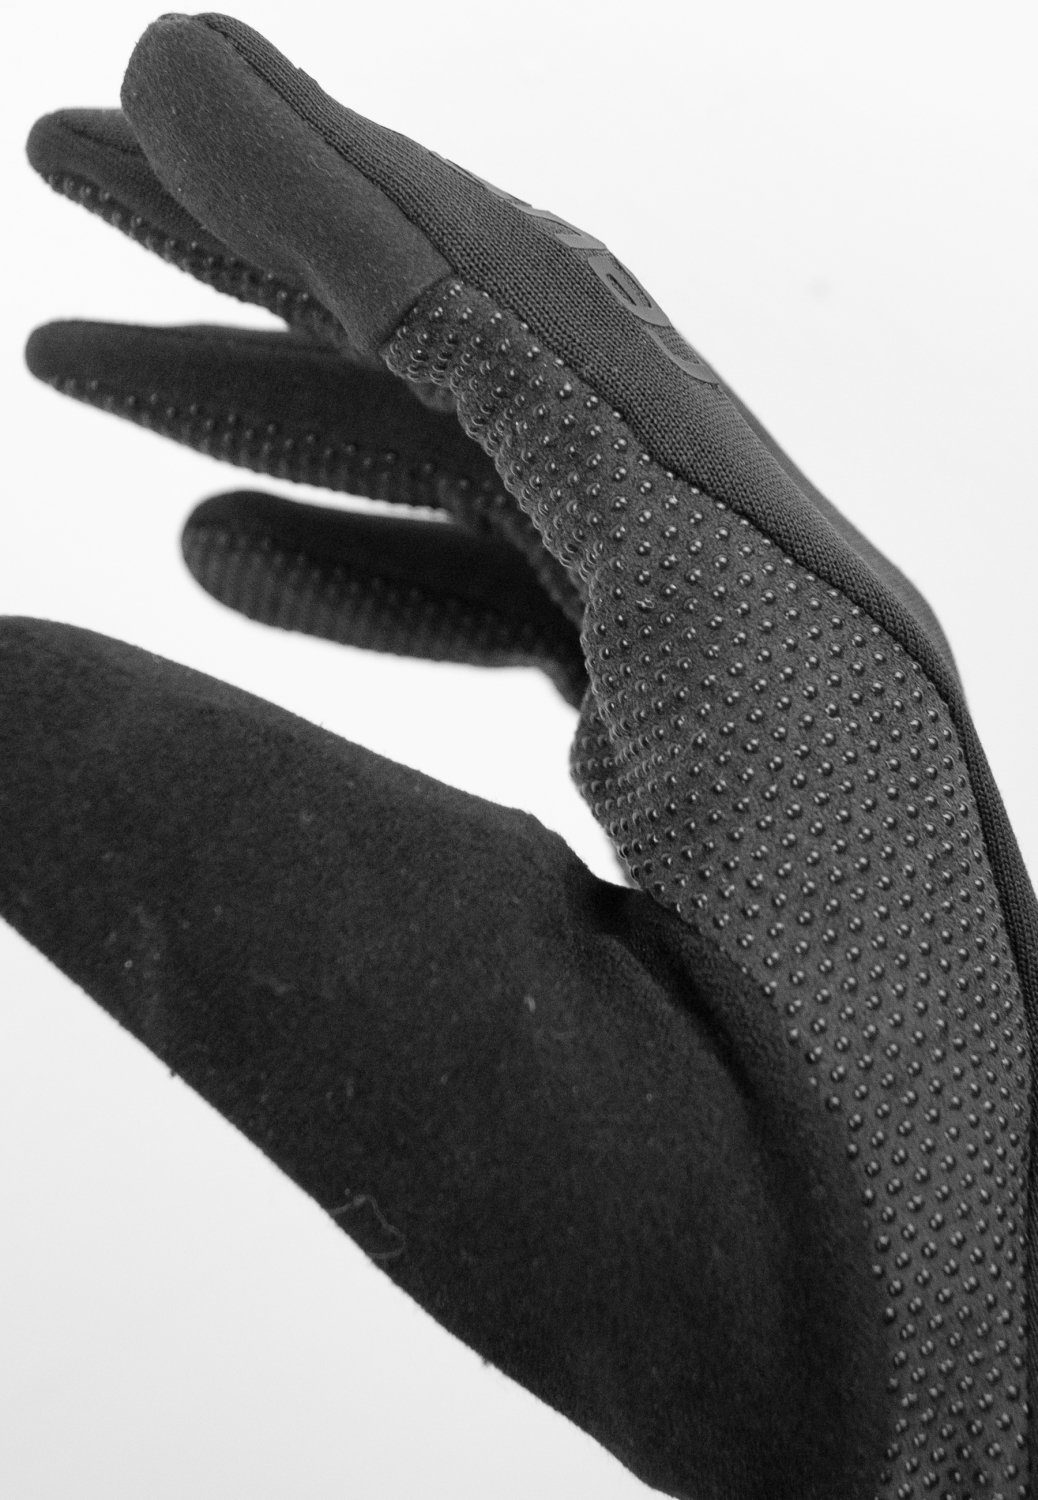 Baffin Reusch Fleecehandschuhe TOUCH-TEC Reusch Handschuh